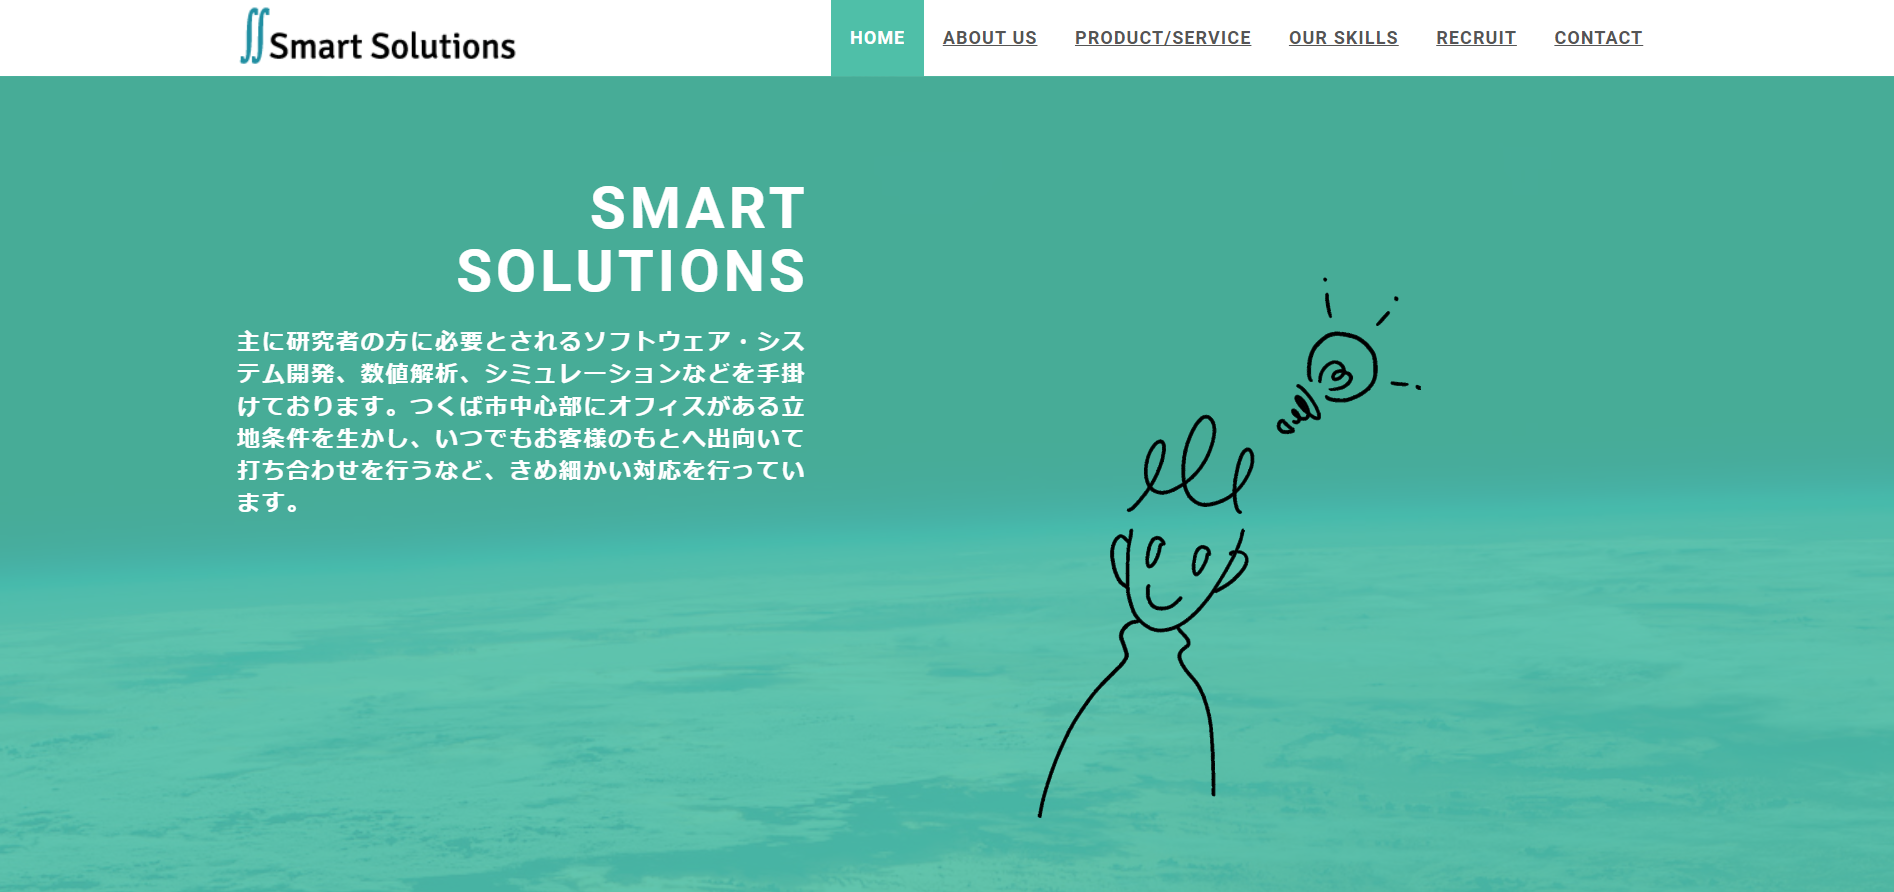 SmartSolutions株式会社のSmartSolutions株式会社:クラウド構築・導入支援サービス